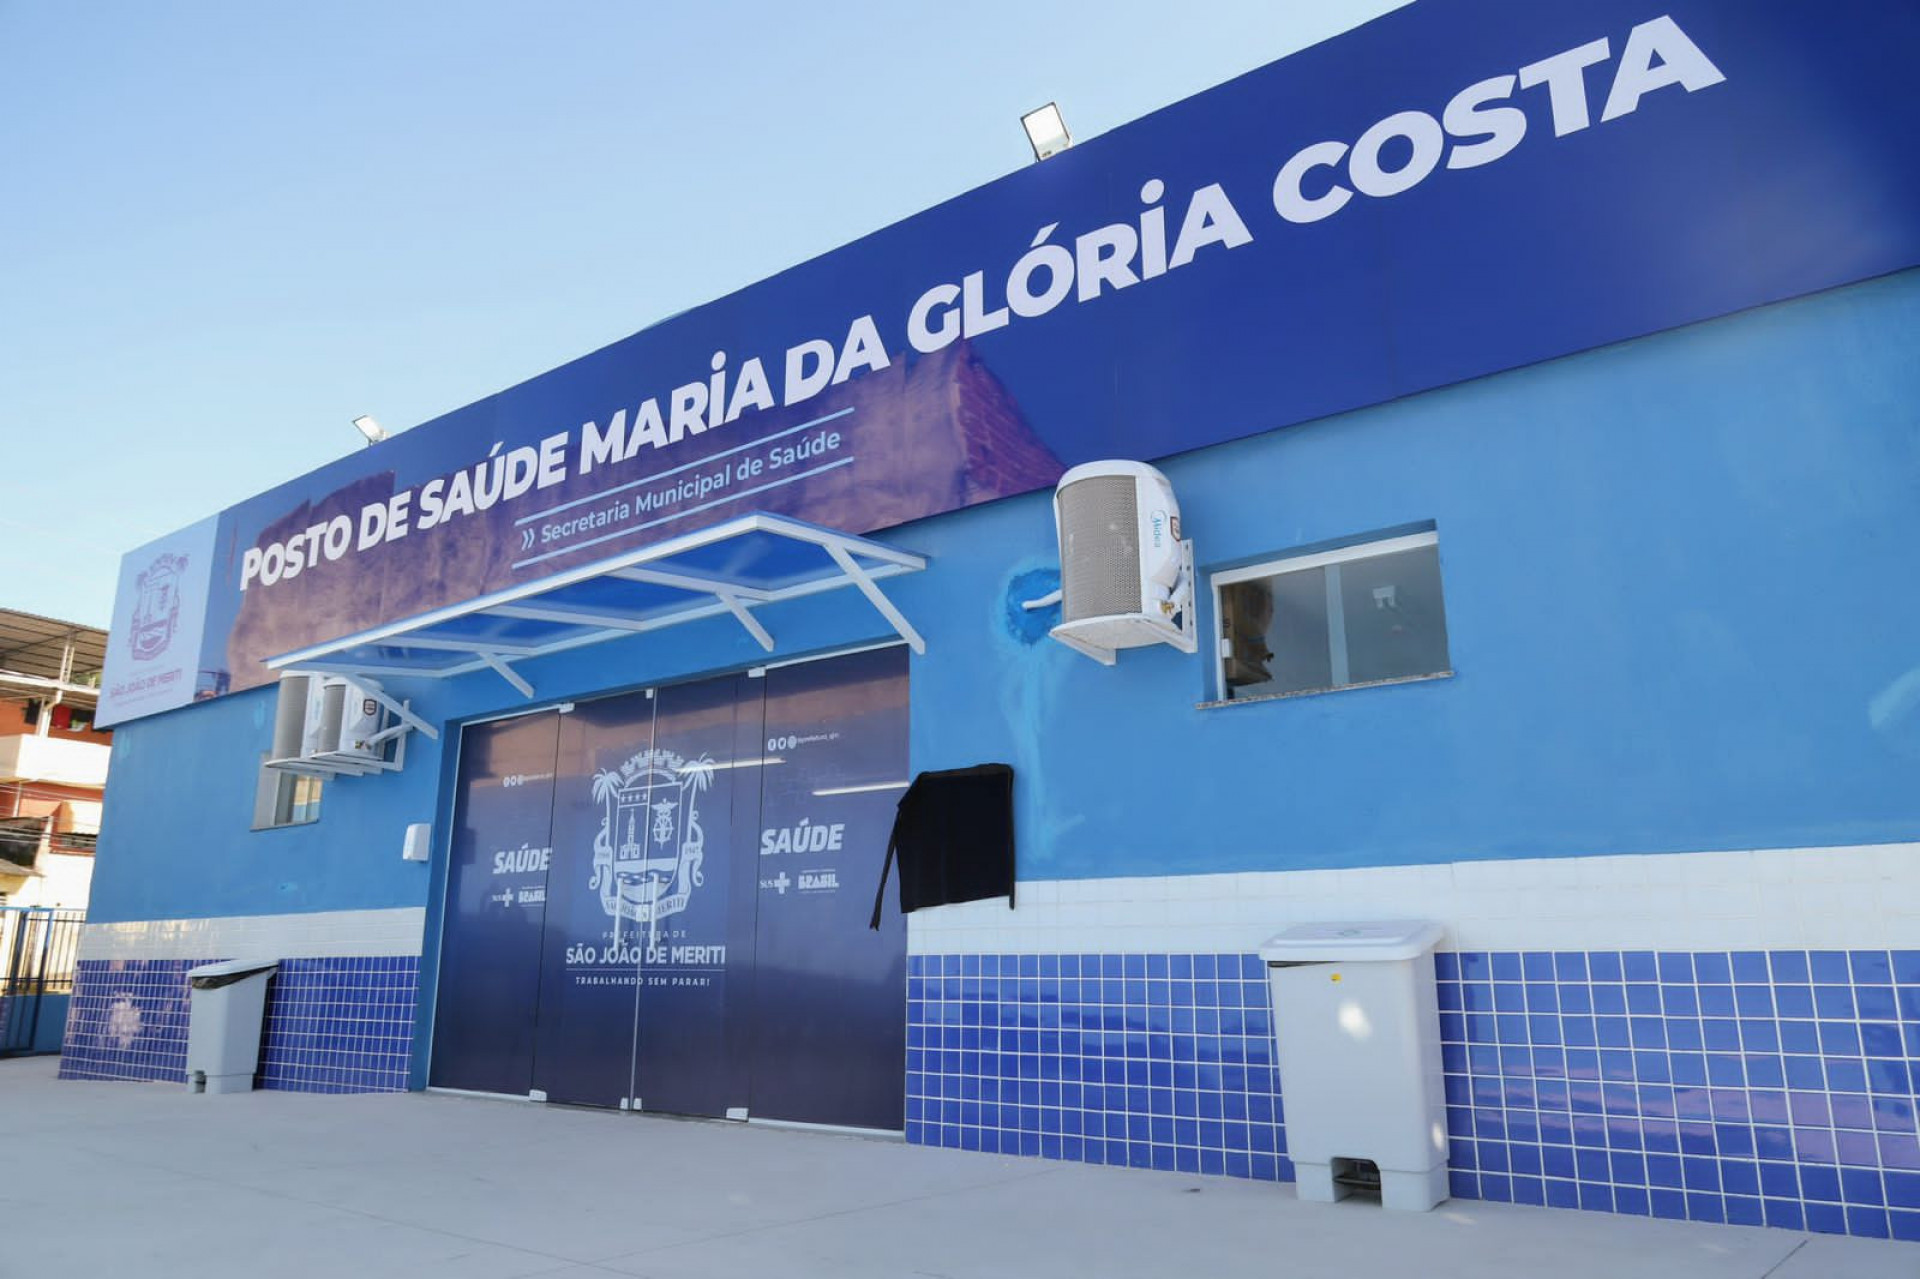 Prefeitura de São João de Meriti entregou a Unidade Básica de Saúde Maria da Glória Costa - Edgar Maciel